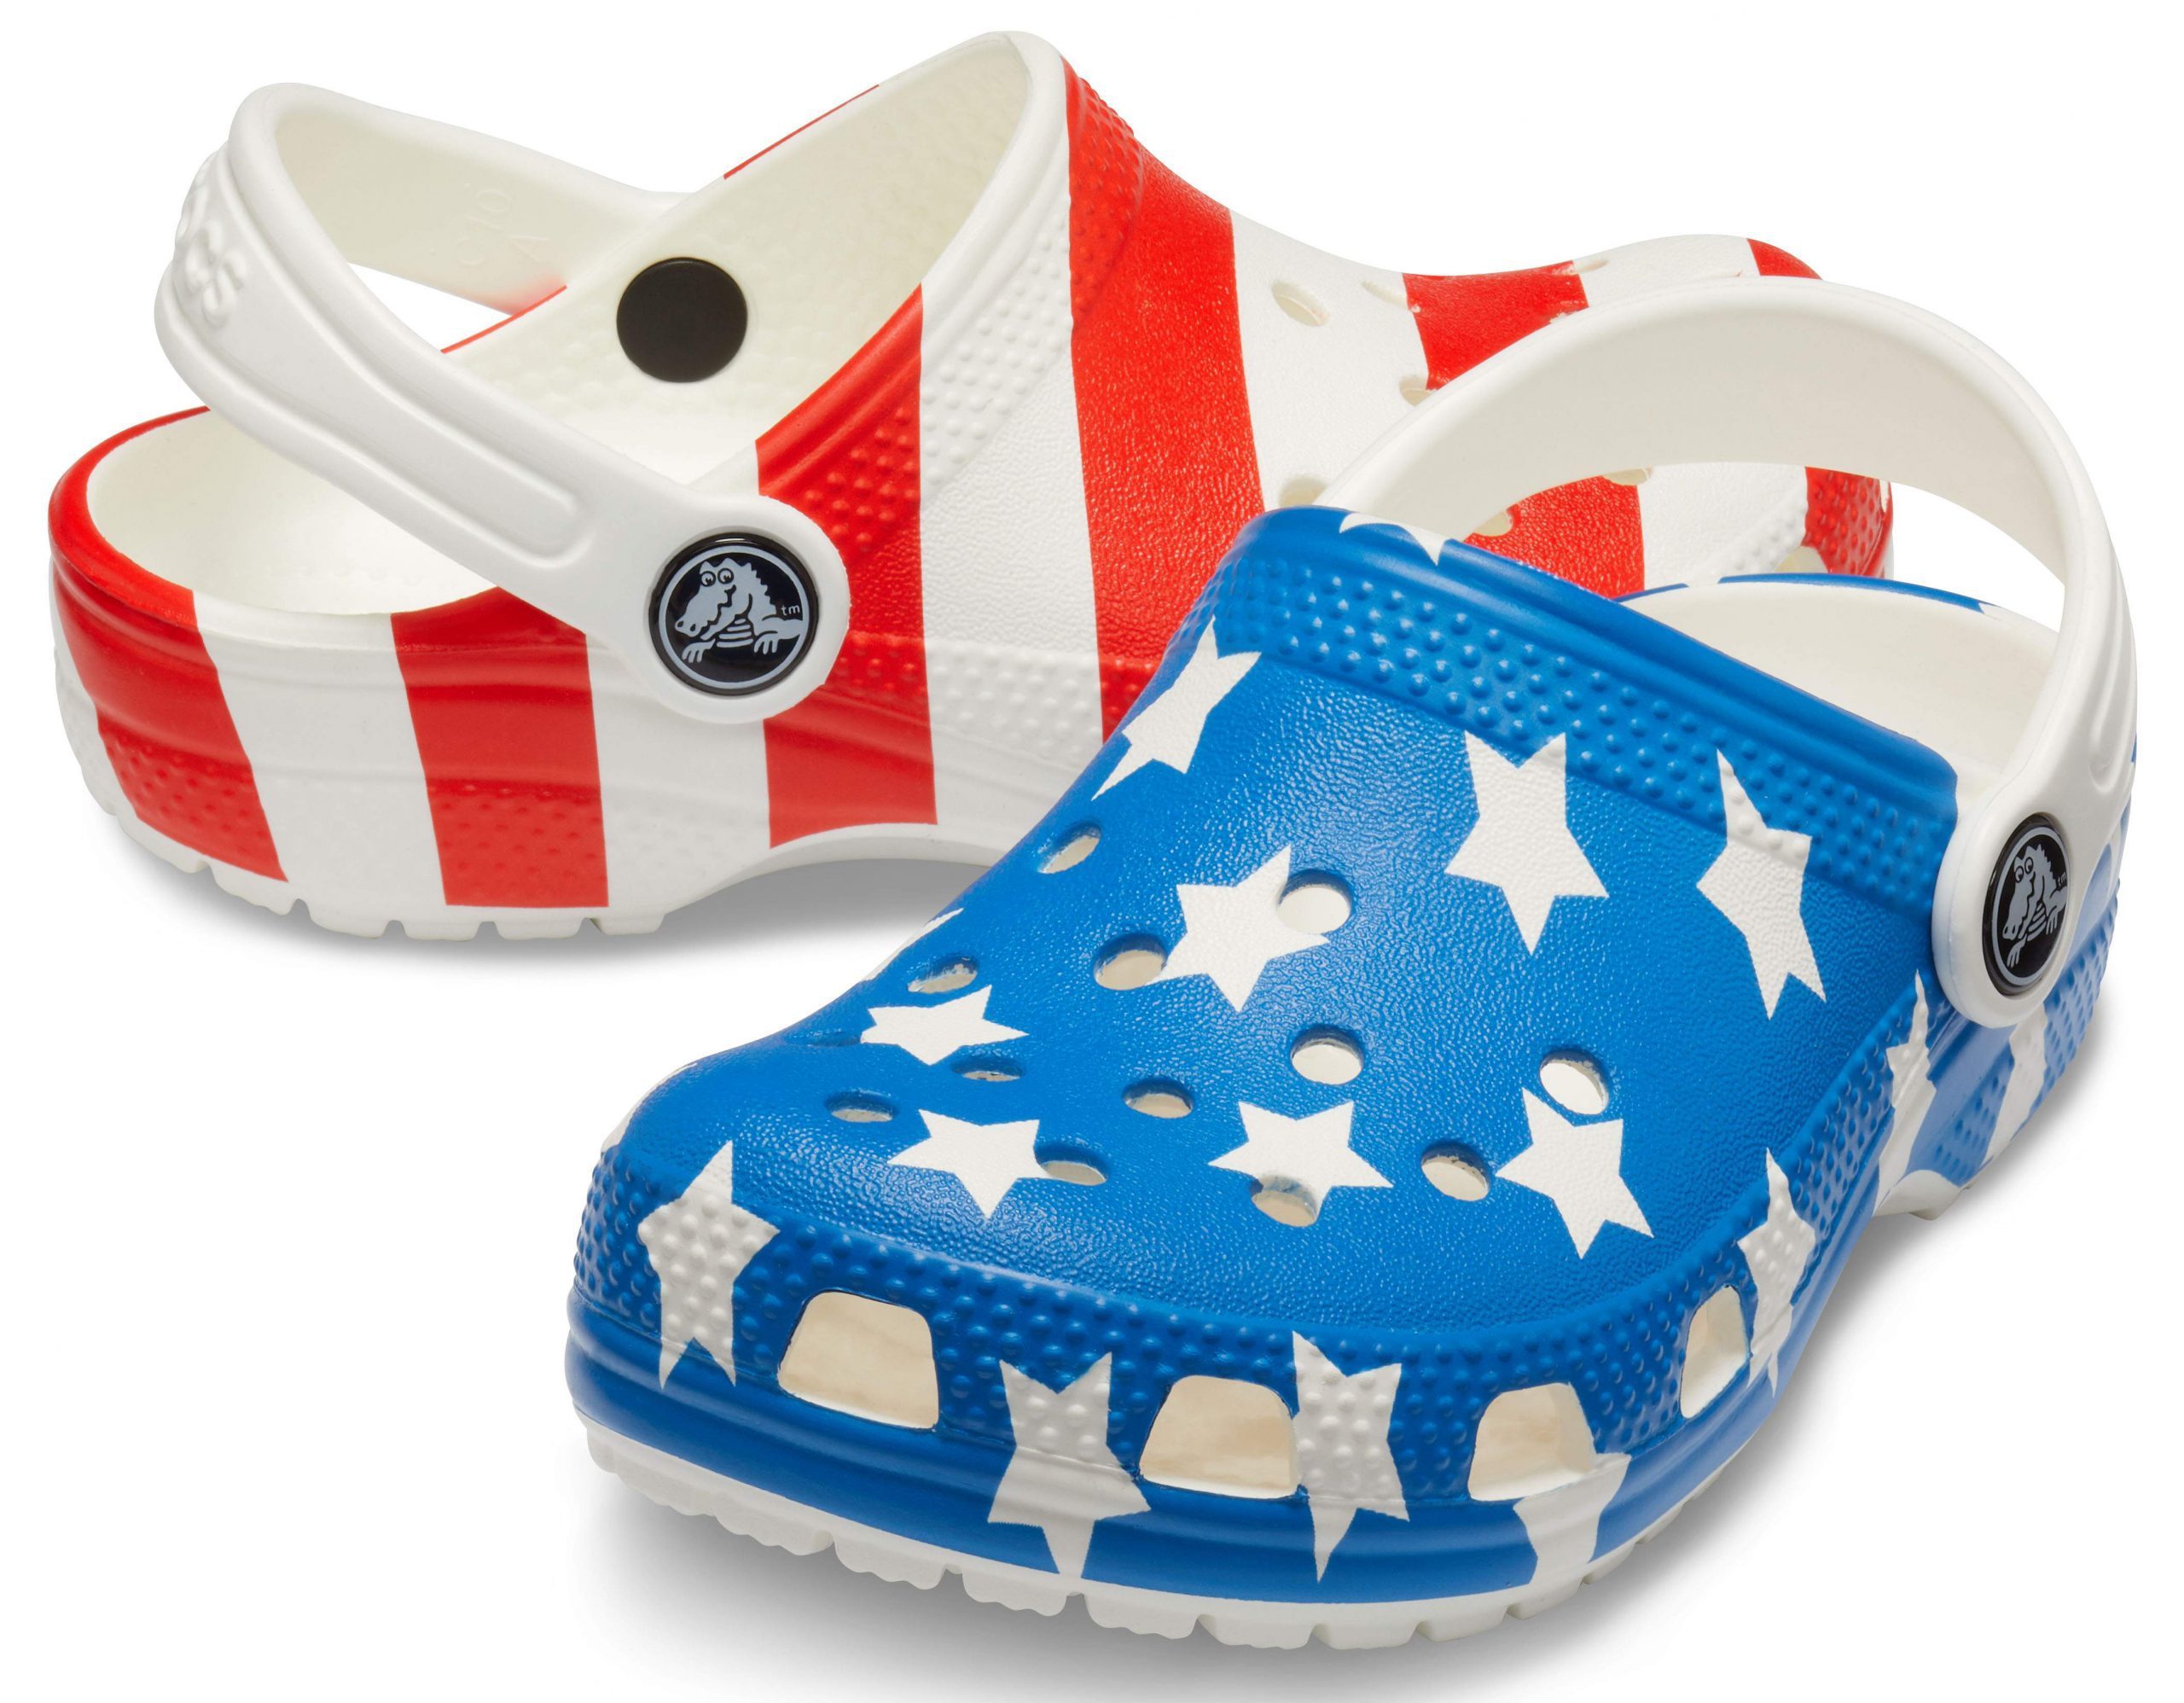 Crocs Unisex-Adult Classic American Flag Clogs